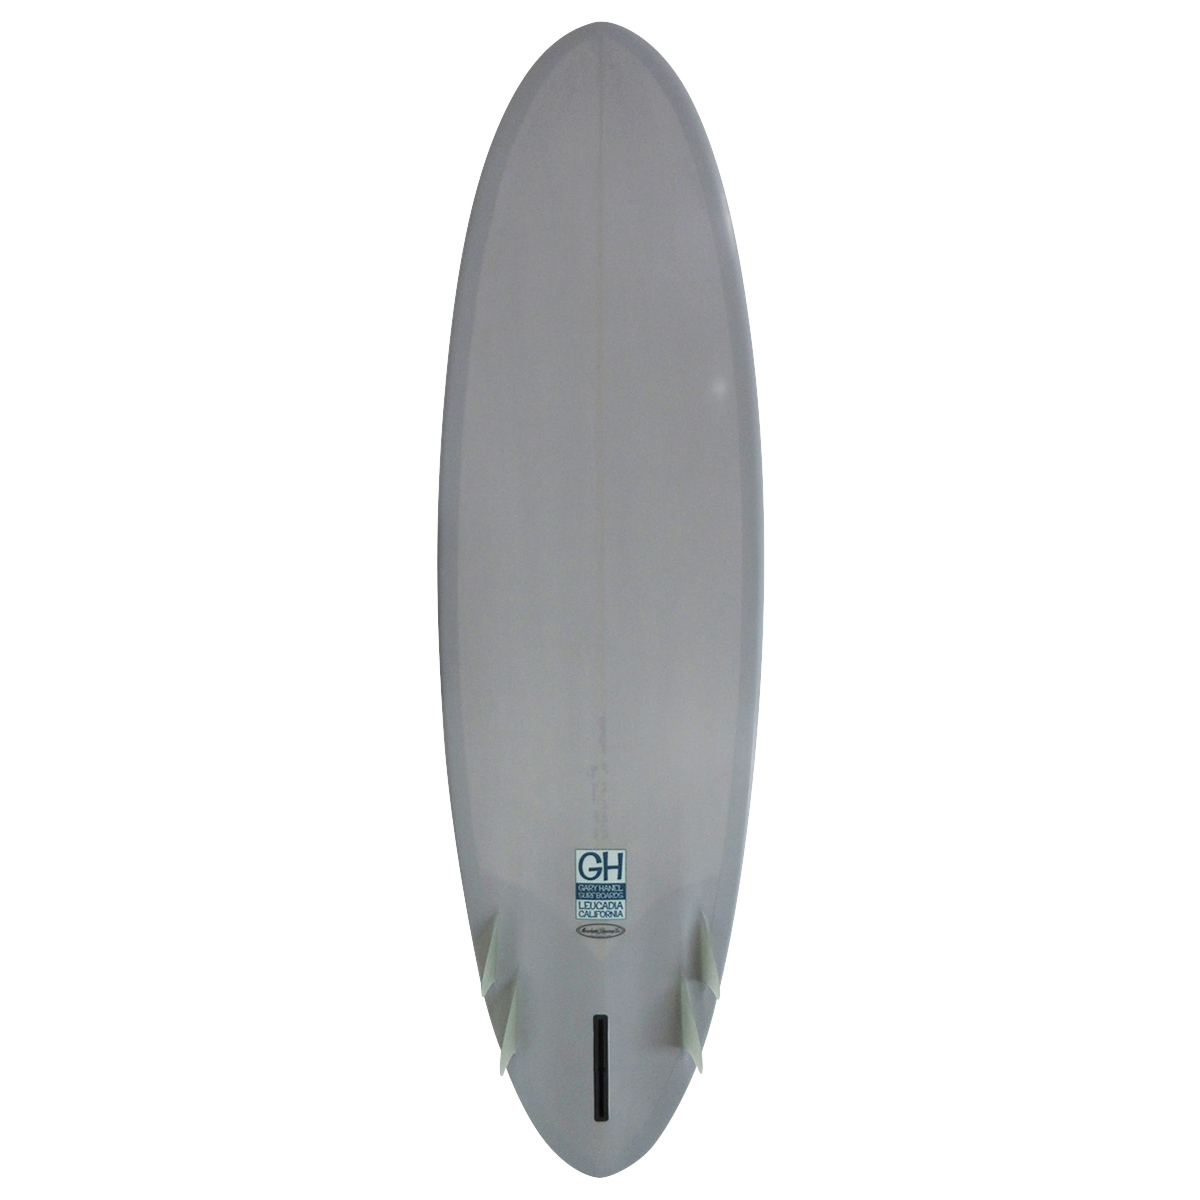 Gary Hanel Surfboards : Bonzer Egg 6'9"